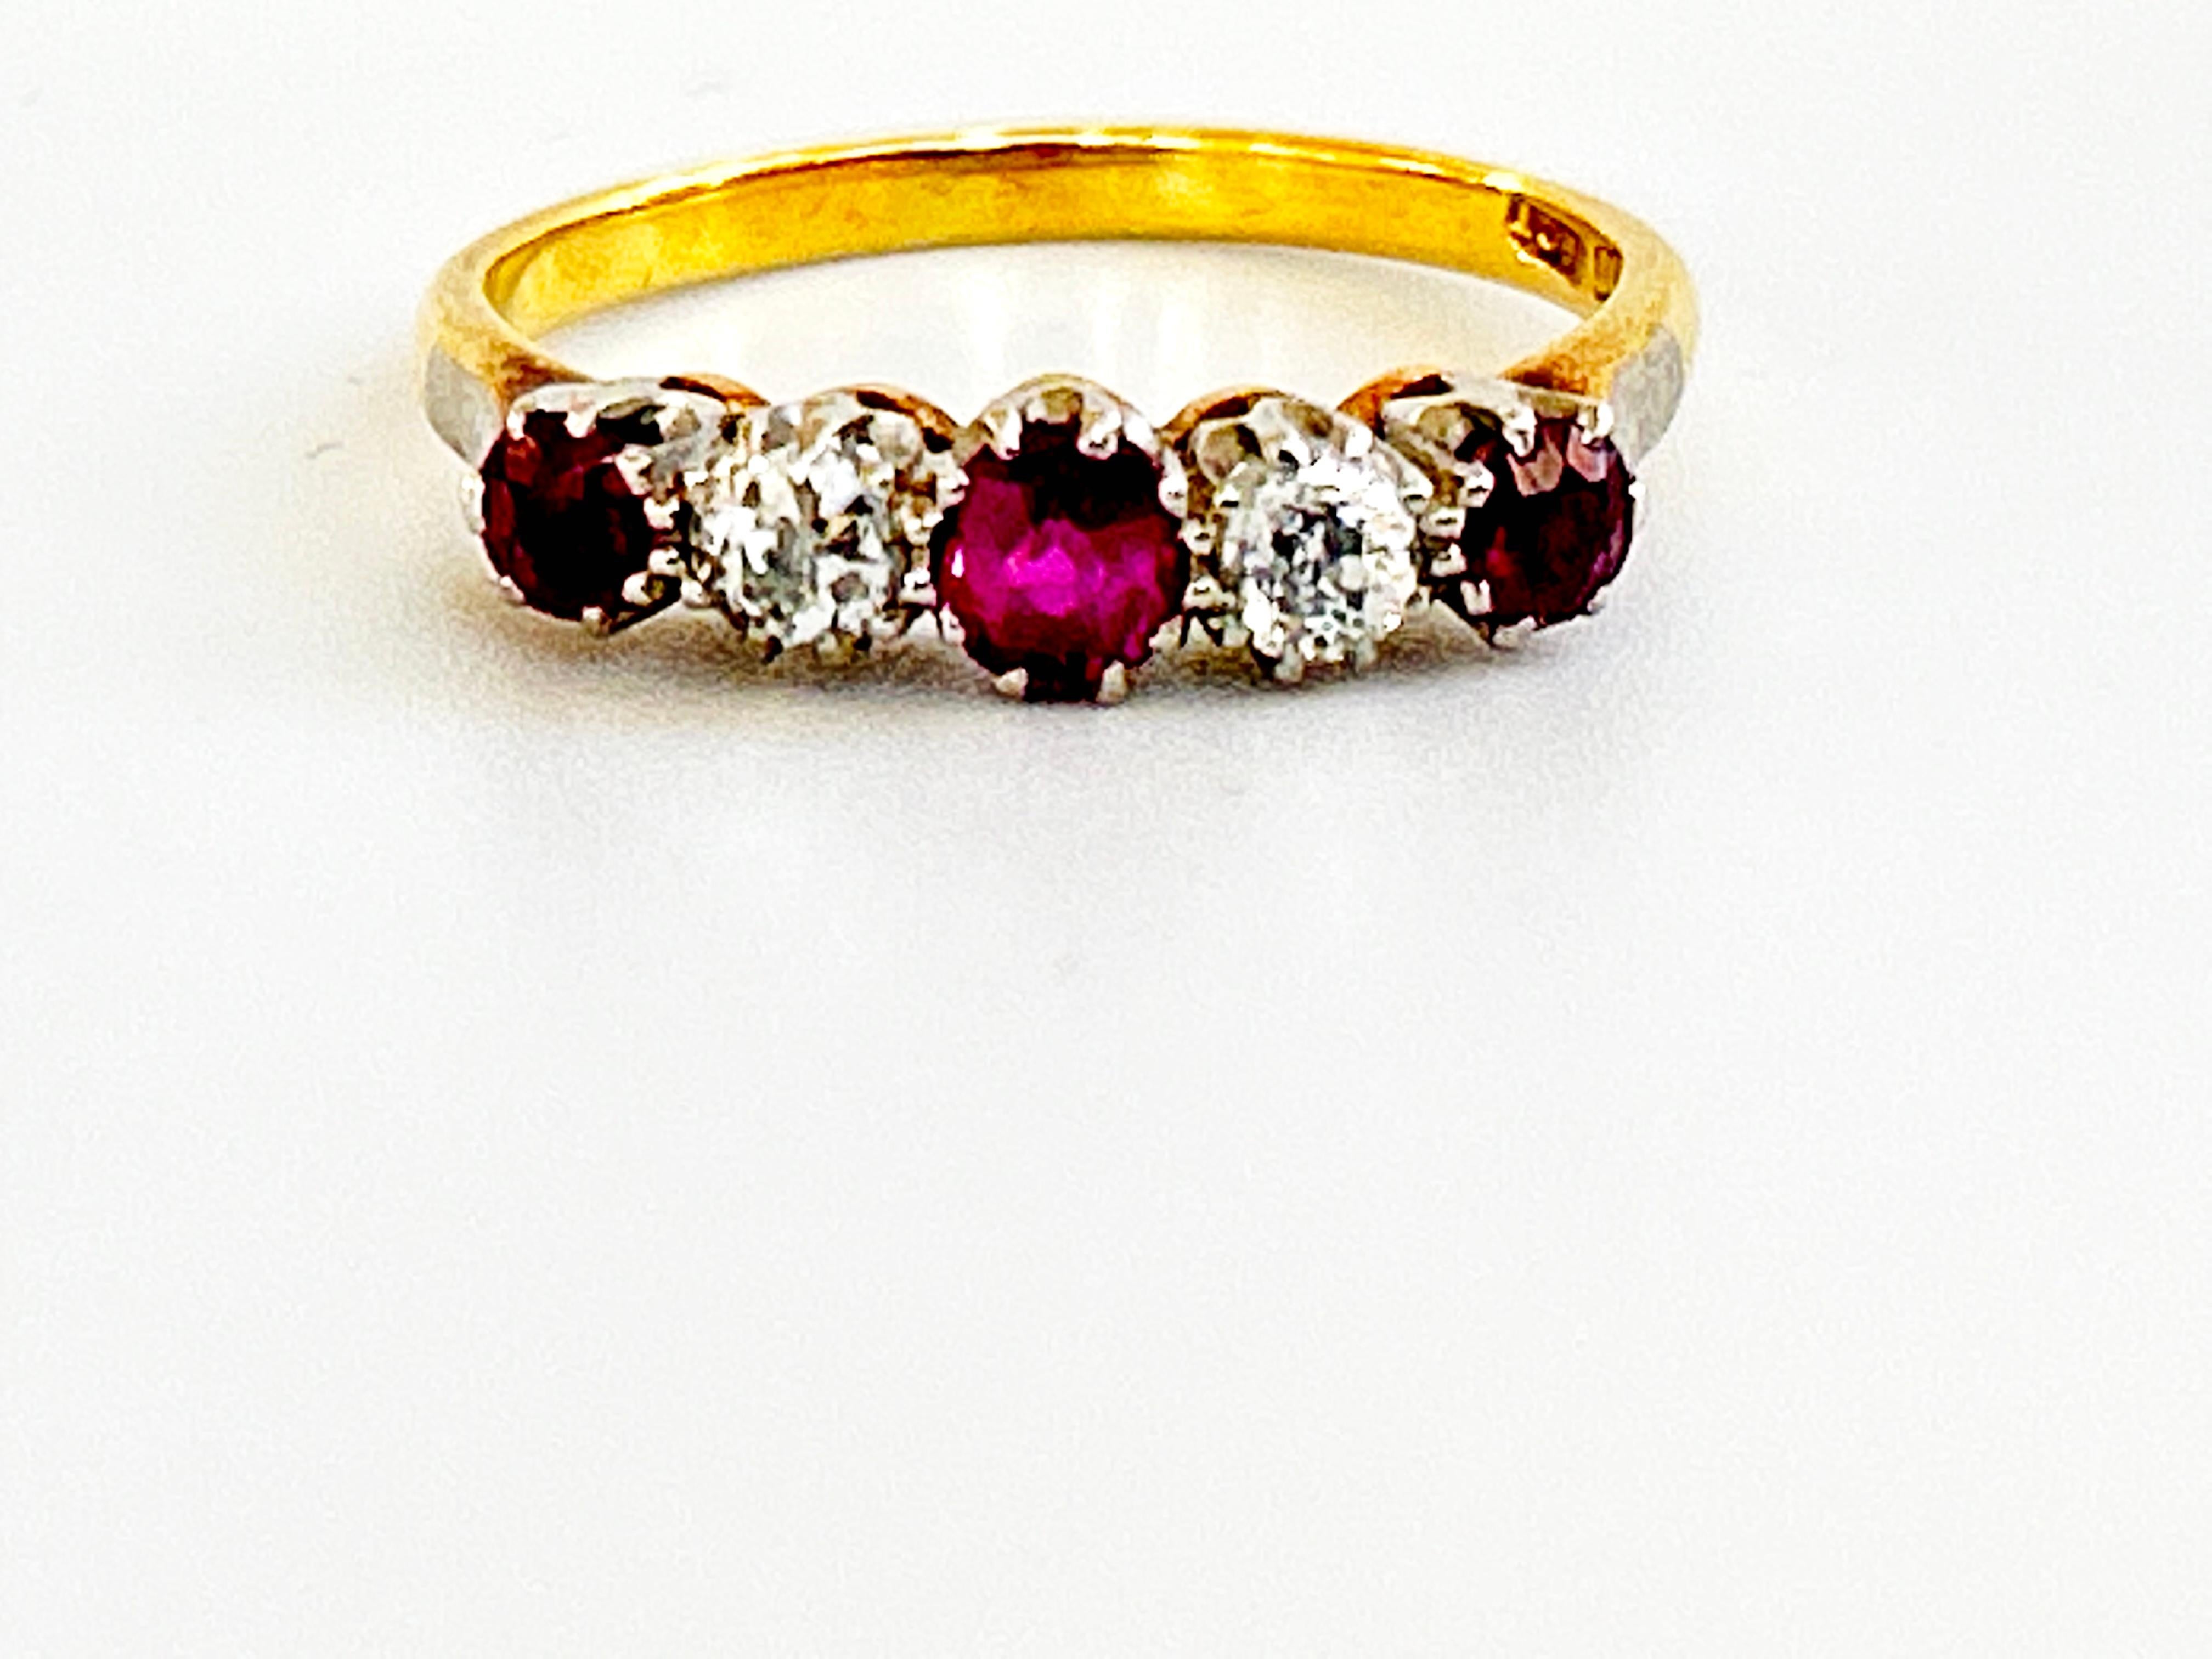 Ein halber Ring mit Rubinen und Diamanten, drei runde, facettierte Rubine und zwei altgeschliffene Diamanten, eingefasst in einer Fassung aus Gelb- und Weißgold, mit einem 18-karätigen Ring. Plat, Bruttogewicht 3,4g.
Diamanten: Farbe ist G-I,